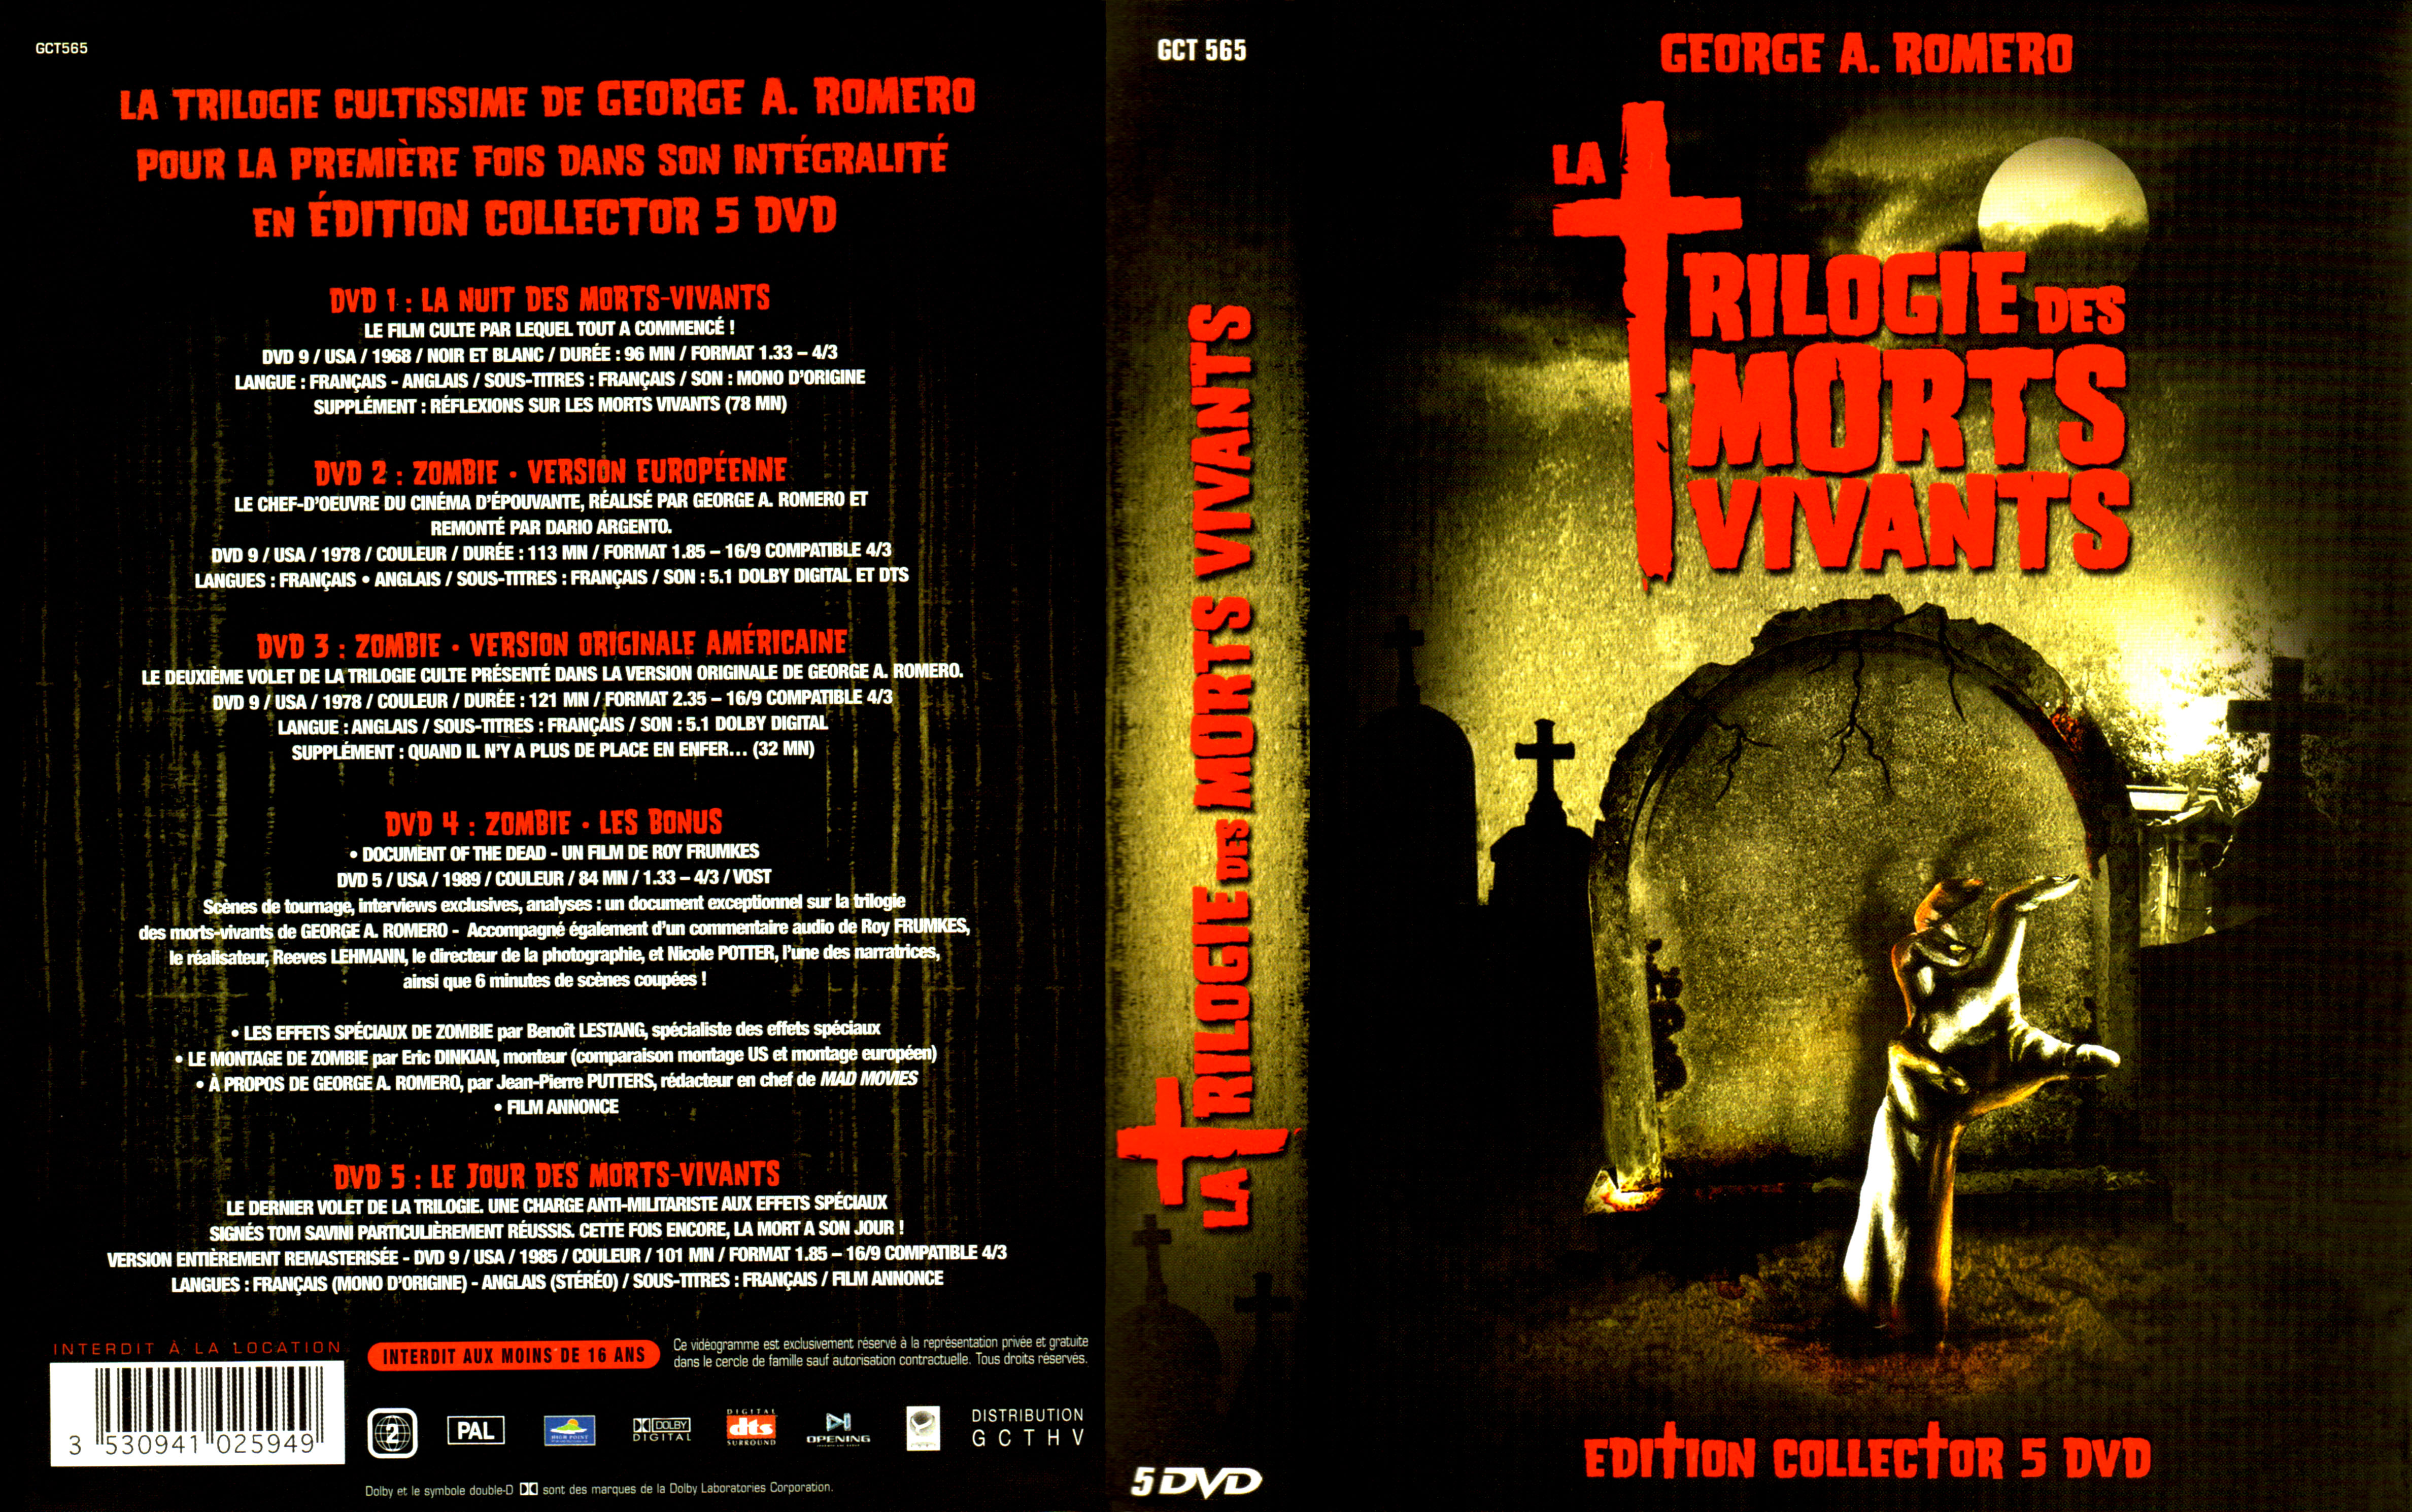 Jaquette DVD La trilogie des morts vivants v3